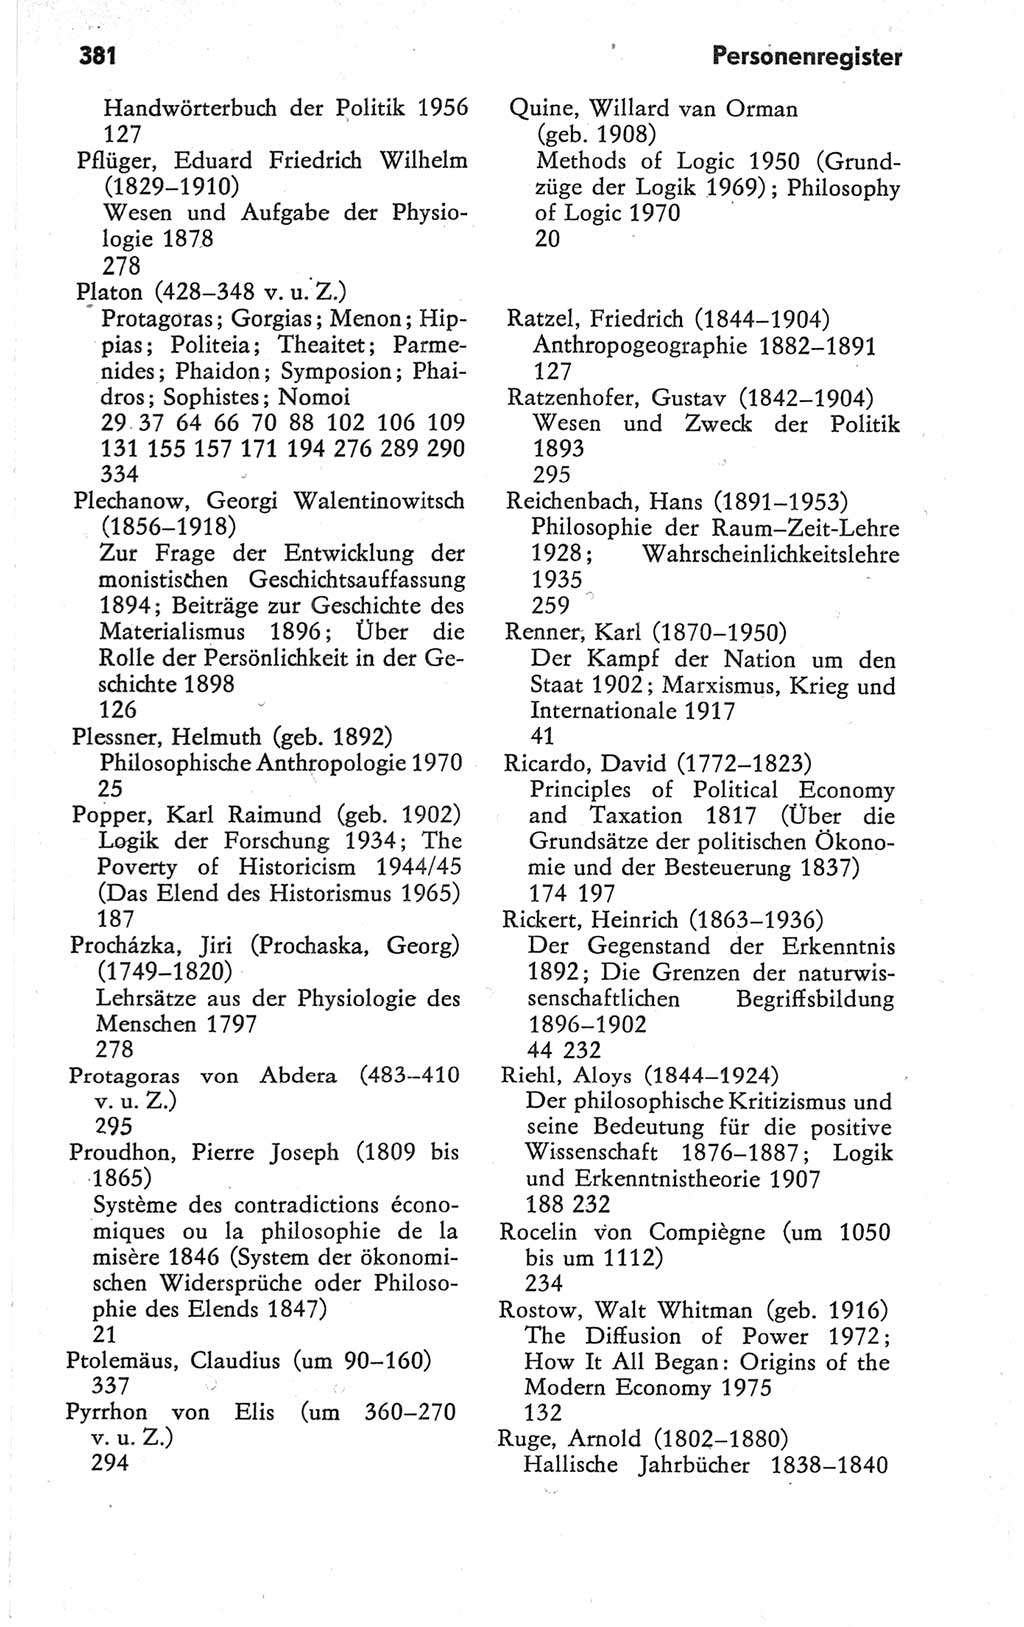 Kleines Wörterbuch der marxistisch-leninistischen Philosophie [Deutsche Demokratische Republik (DDR)] 1979, Seite 381 (Kl. Wb. ML Phil. DDR 1979, S. 381)